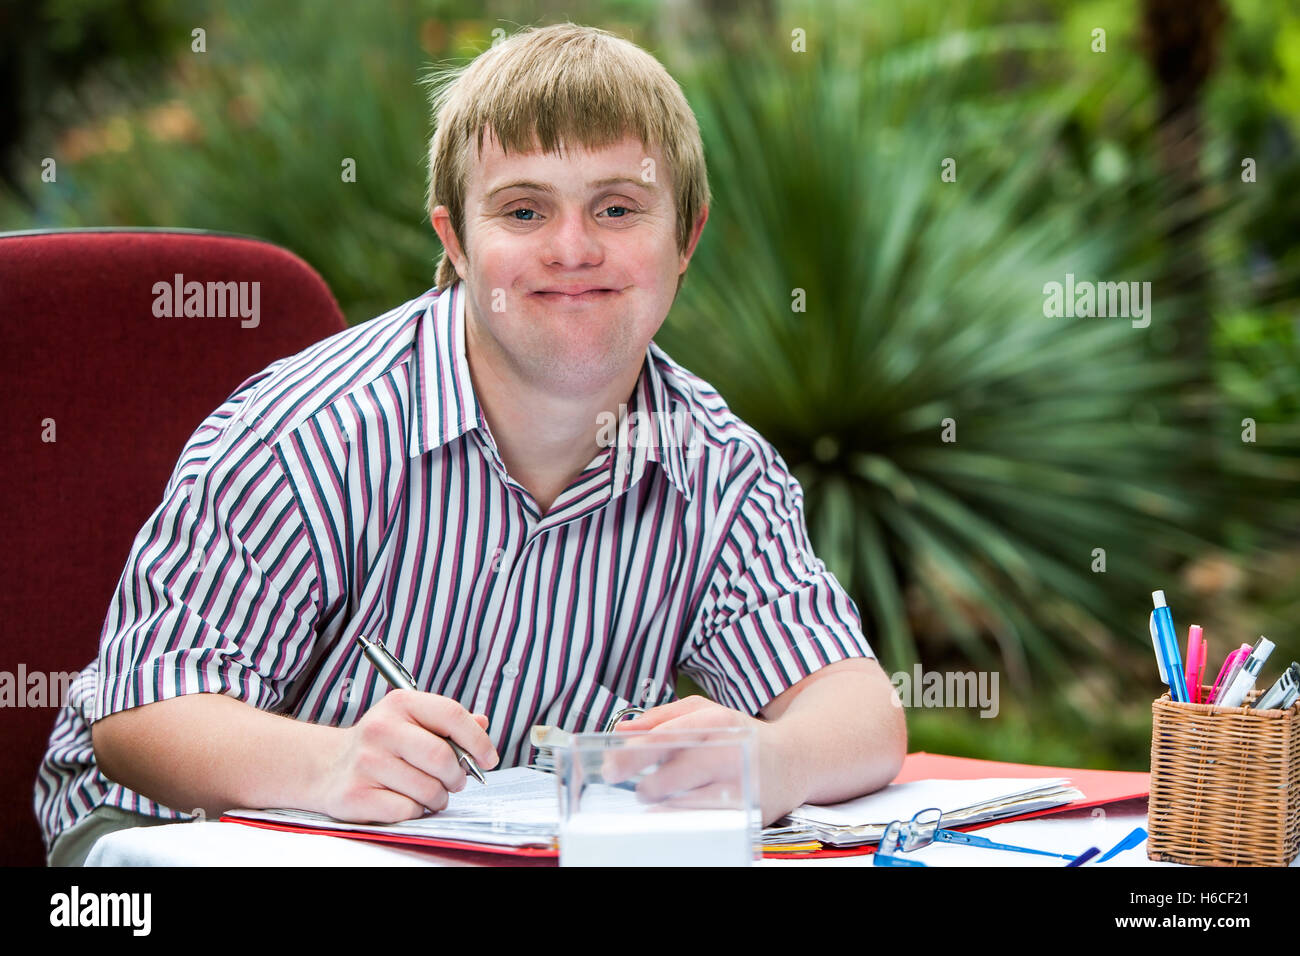 Porträt des jungen männlichen Schüler mit Down-Syndrom am Schreibtisch im freien hautnah. Stockfoto